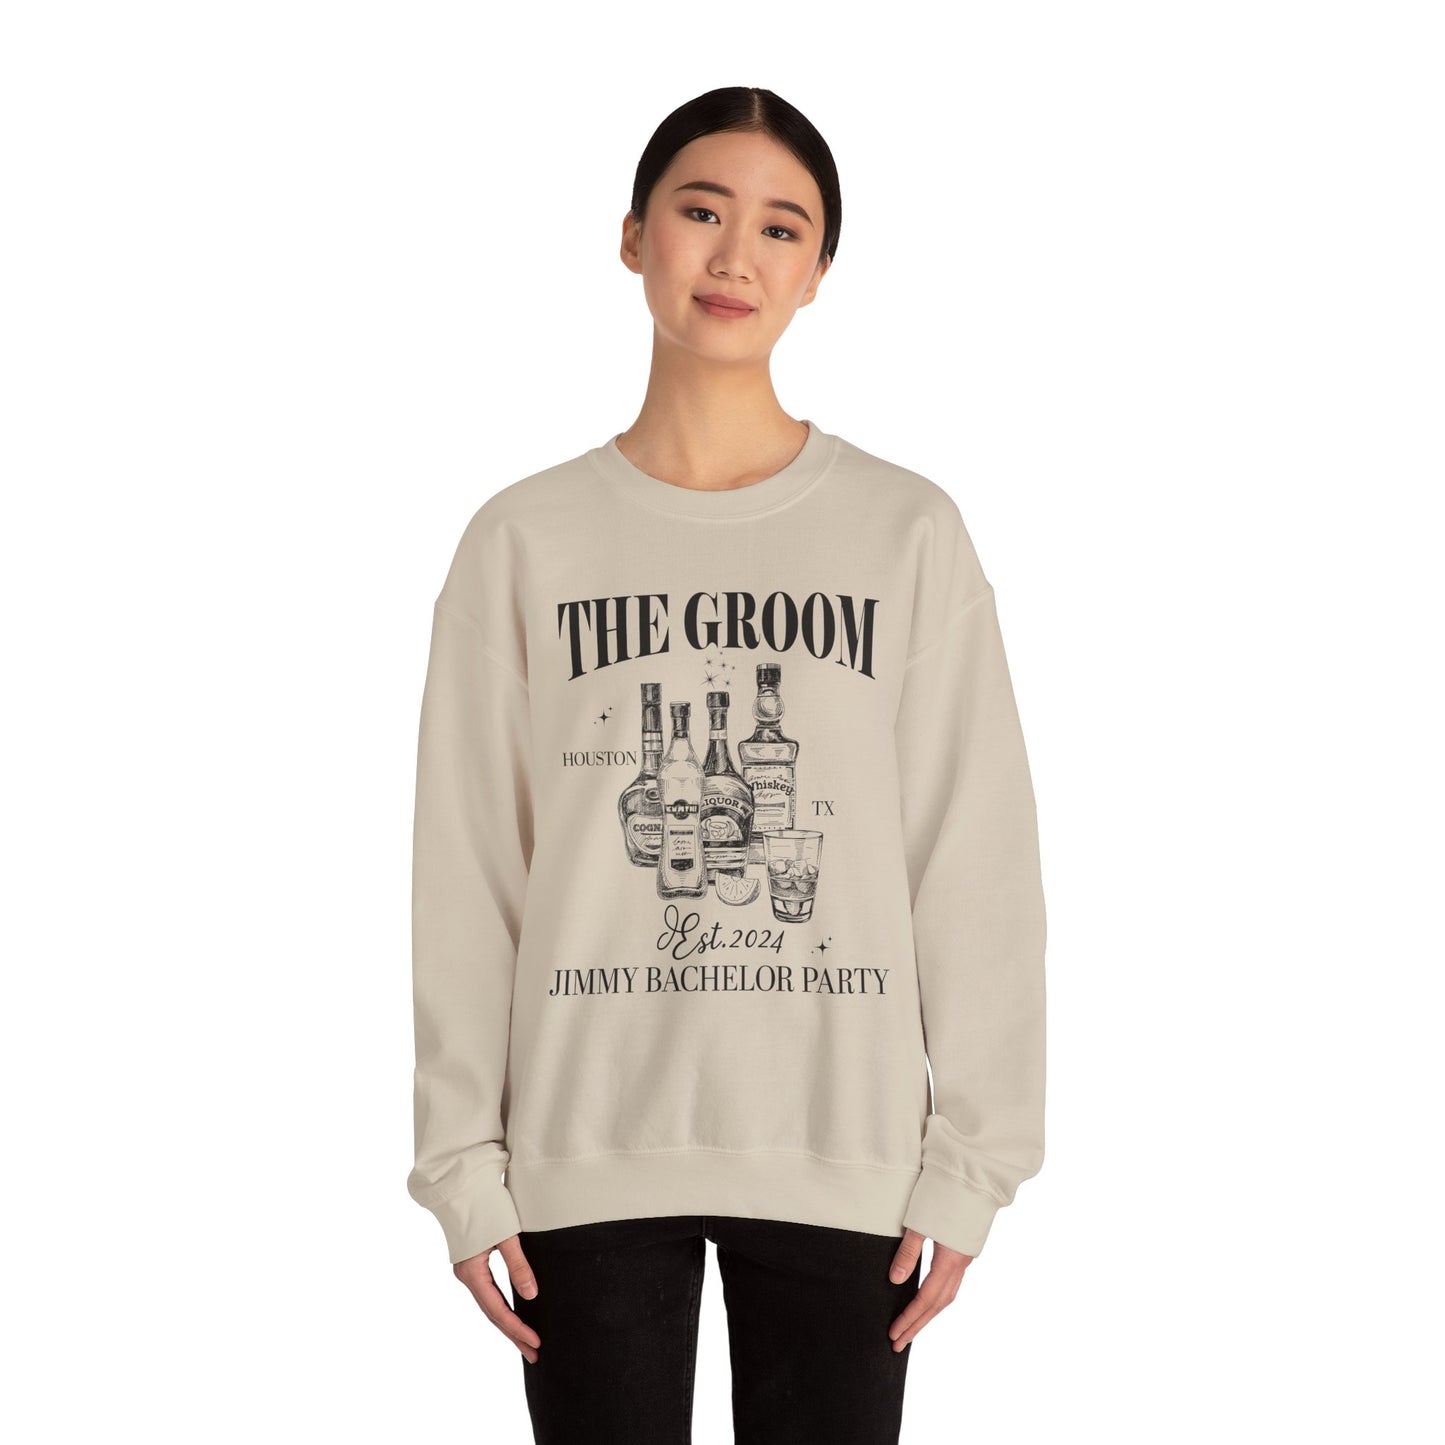 The Groom Bachelor Party Sweatshirt, Groomsmen Sweatshirt, Custom Bachelor Party Gifts, Funny Bachelor Sweatshirt, Group Sweatshirt, S1555